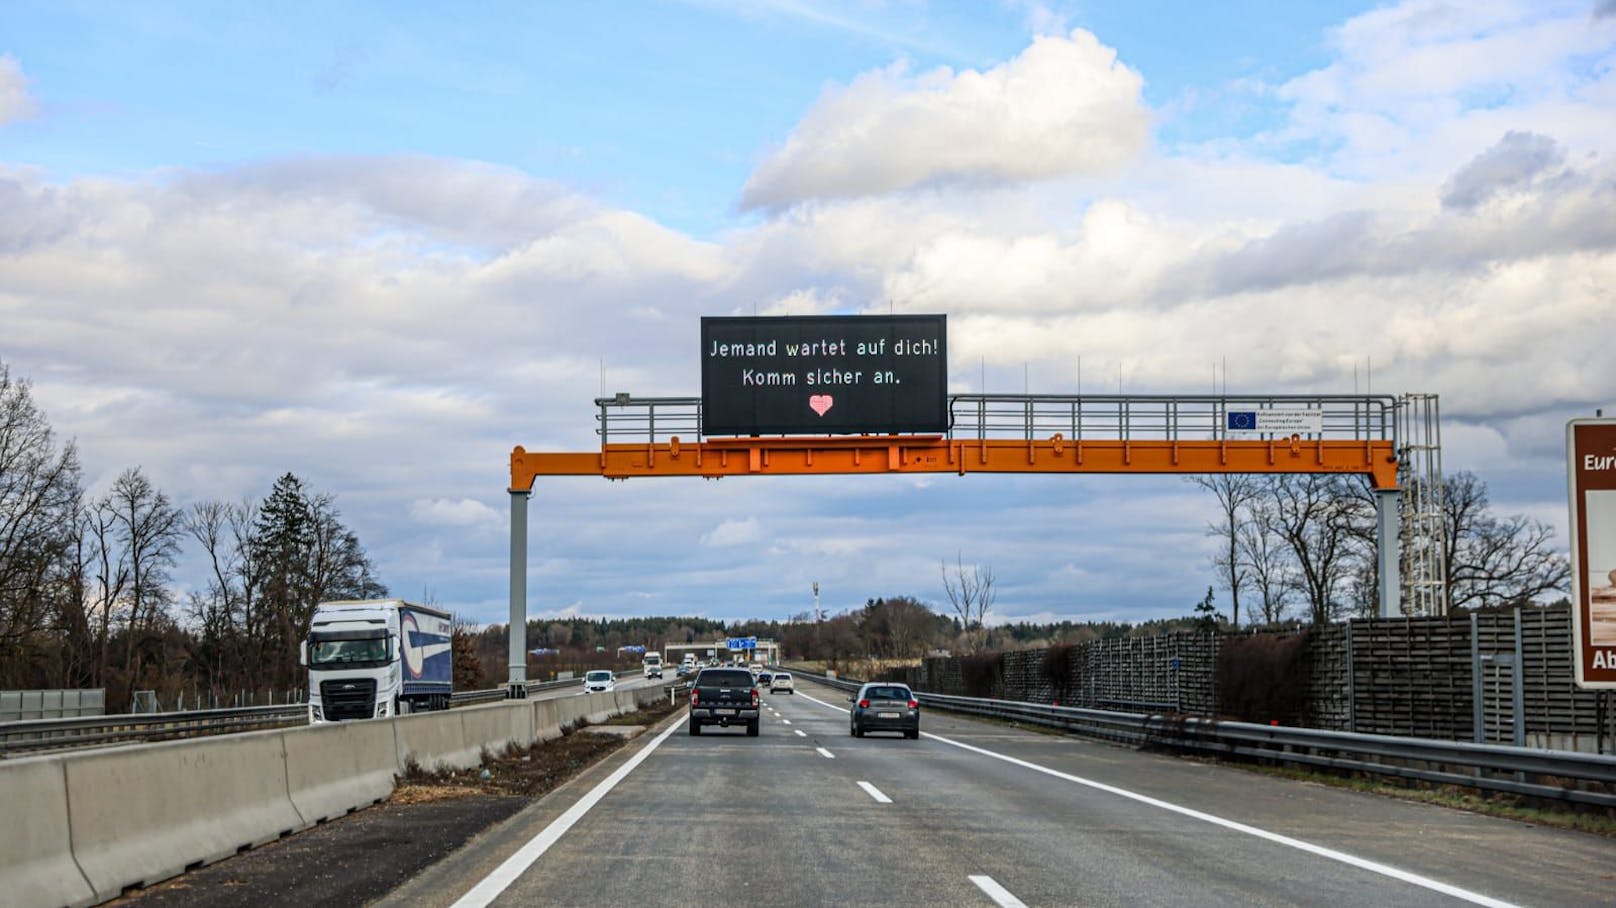 In ganz Österreich bekommen Autofahrer derzeit Botschaften zum Valentinstag zu lesen.